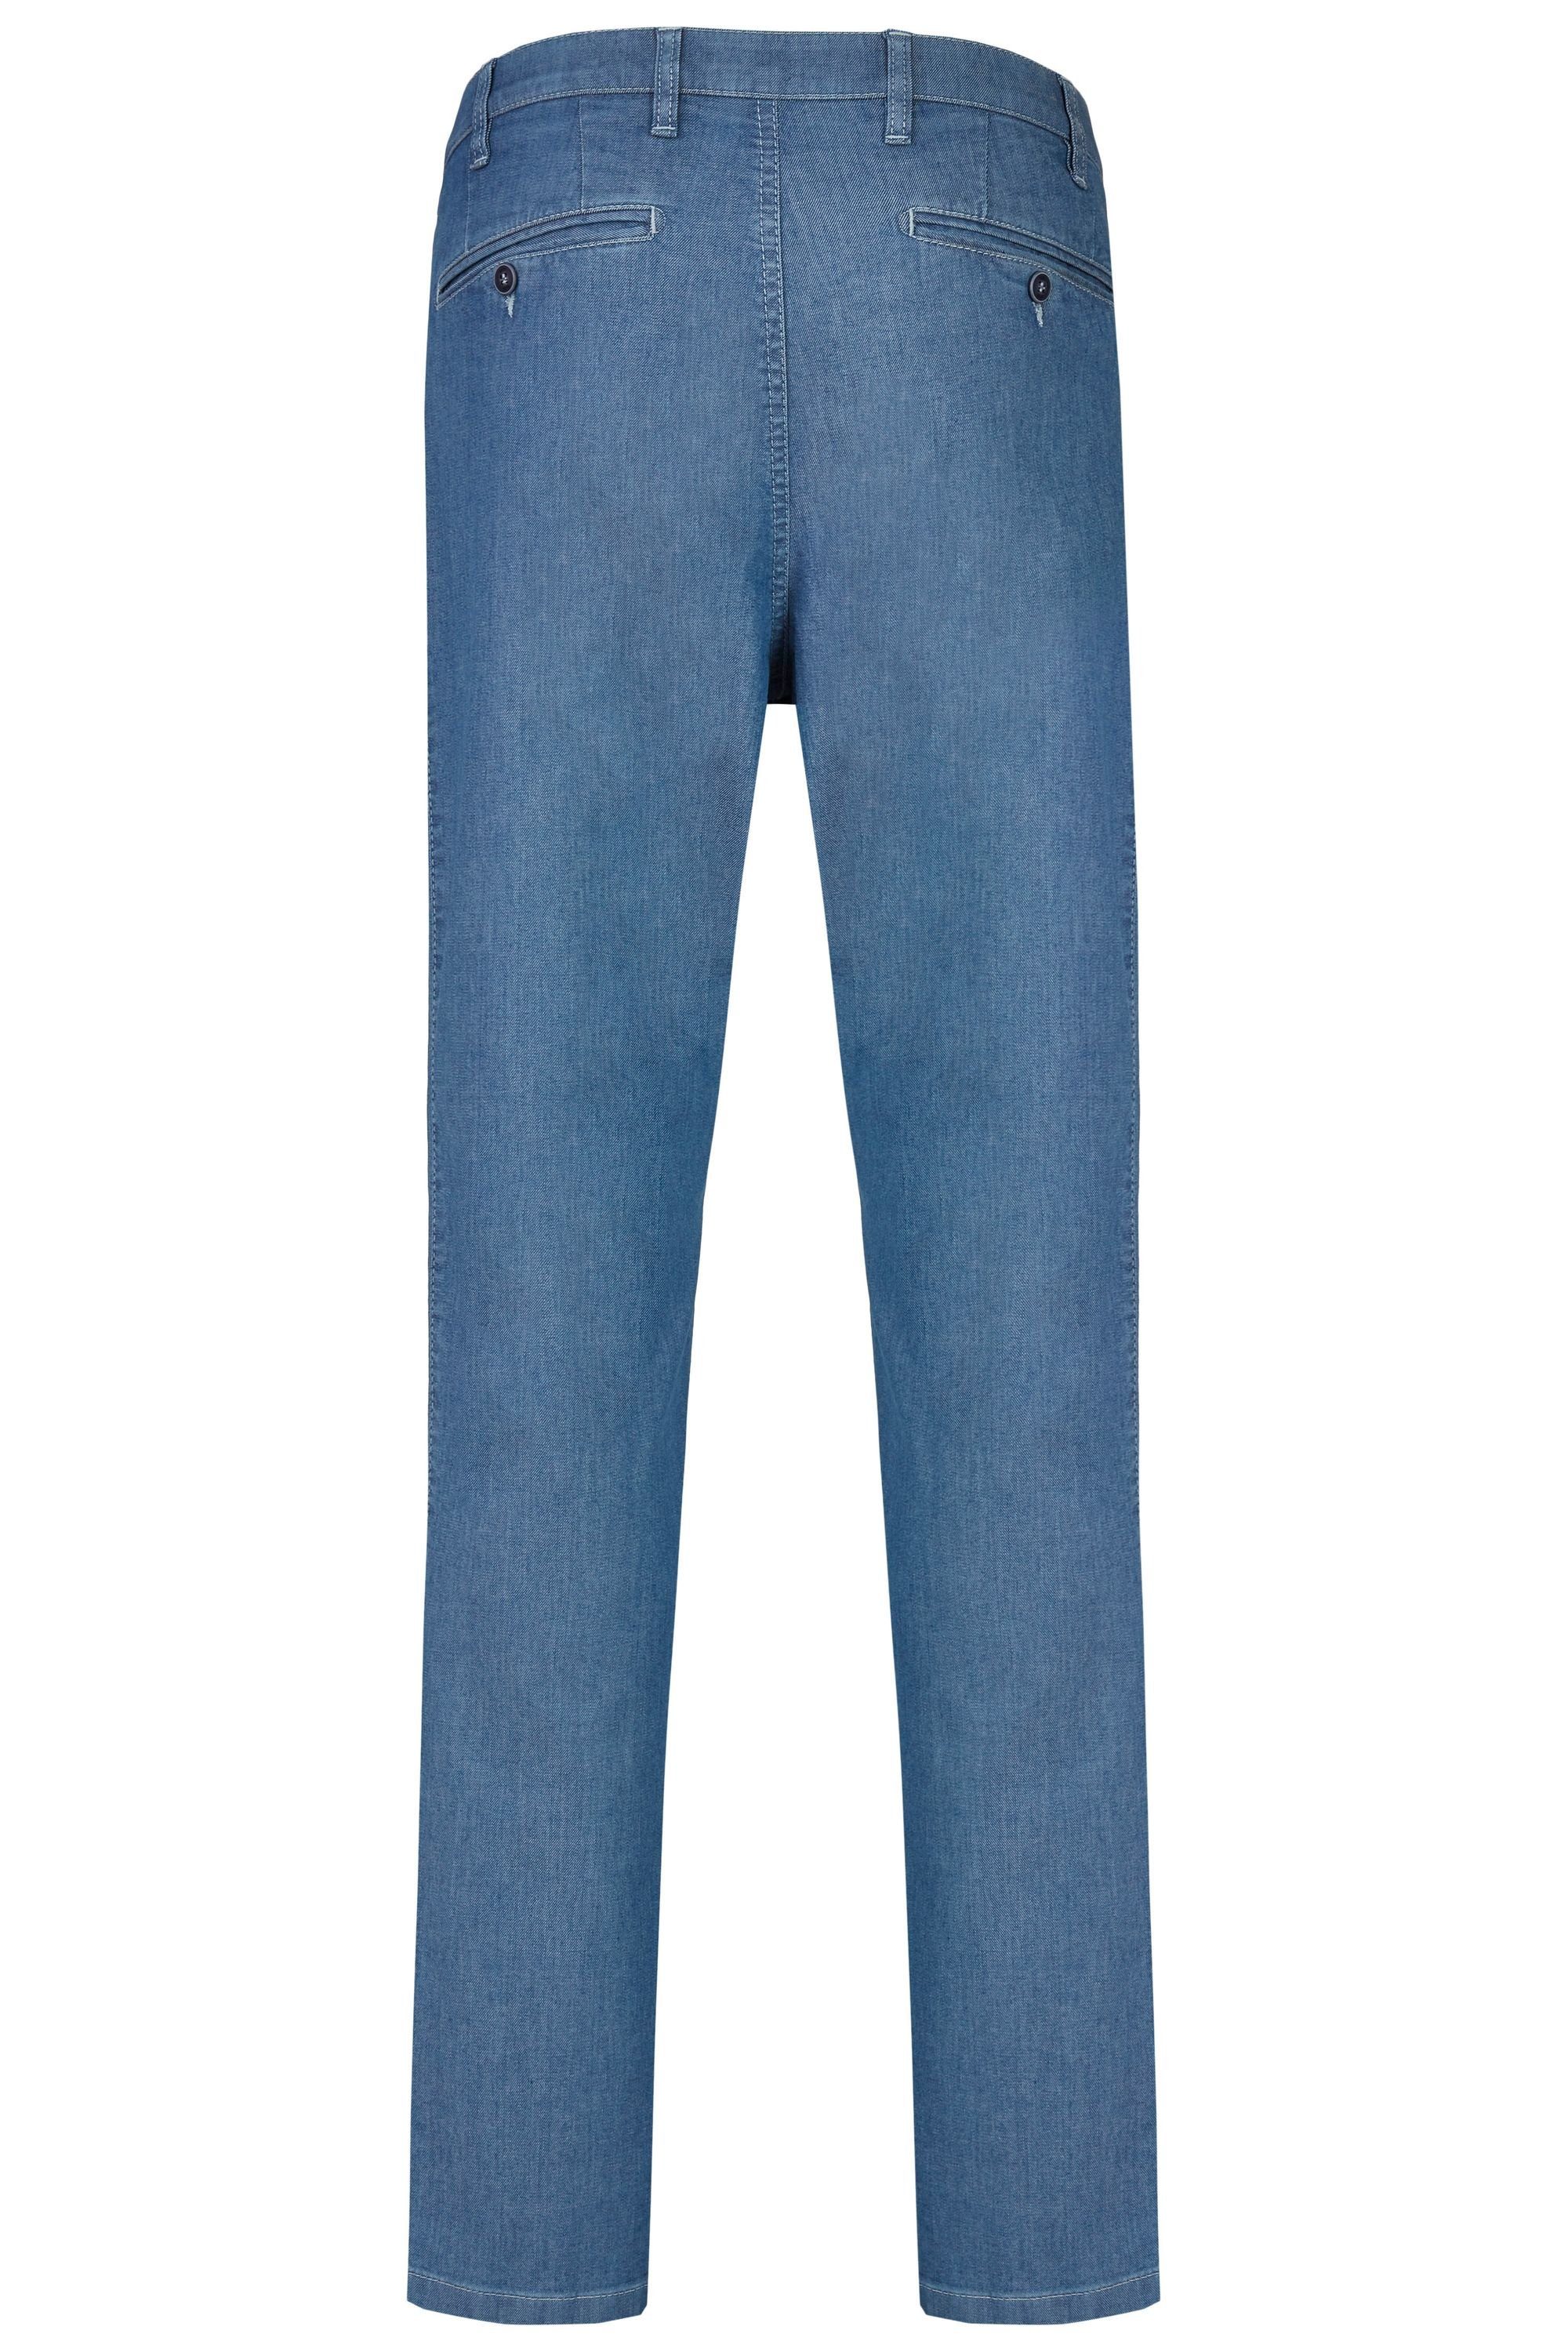 High Bequeme Jeans aus Hose Herren Jeans Fit Sommer (43) bleached Perfect Flex aubi 577 Stretch Baumwolle aubi: Modell